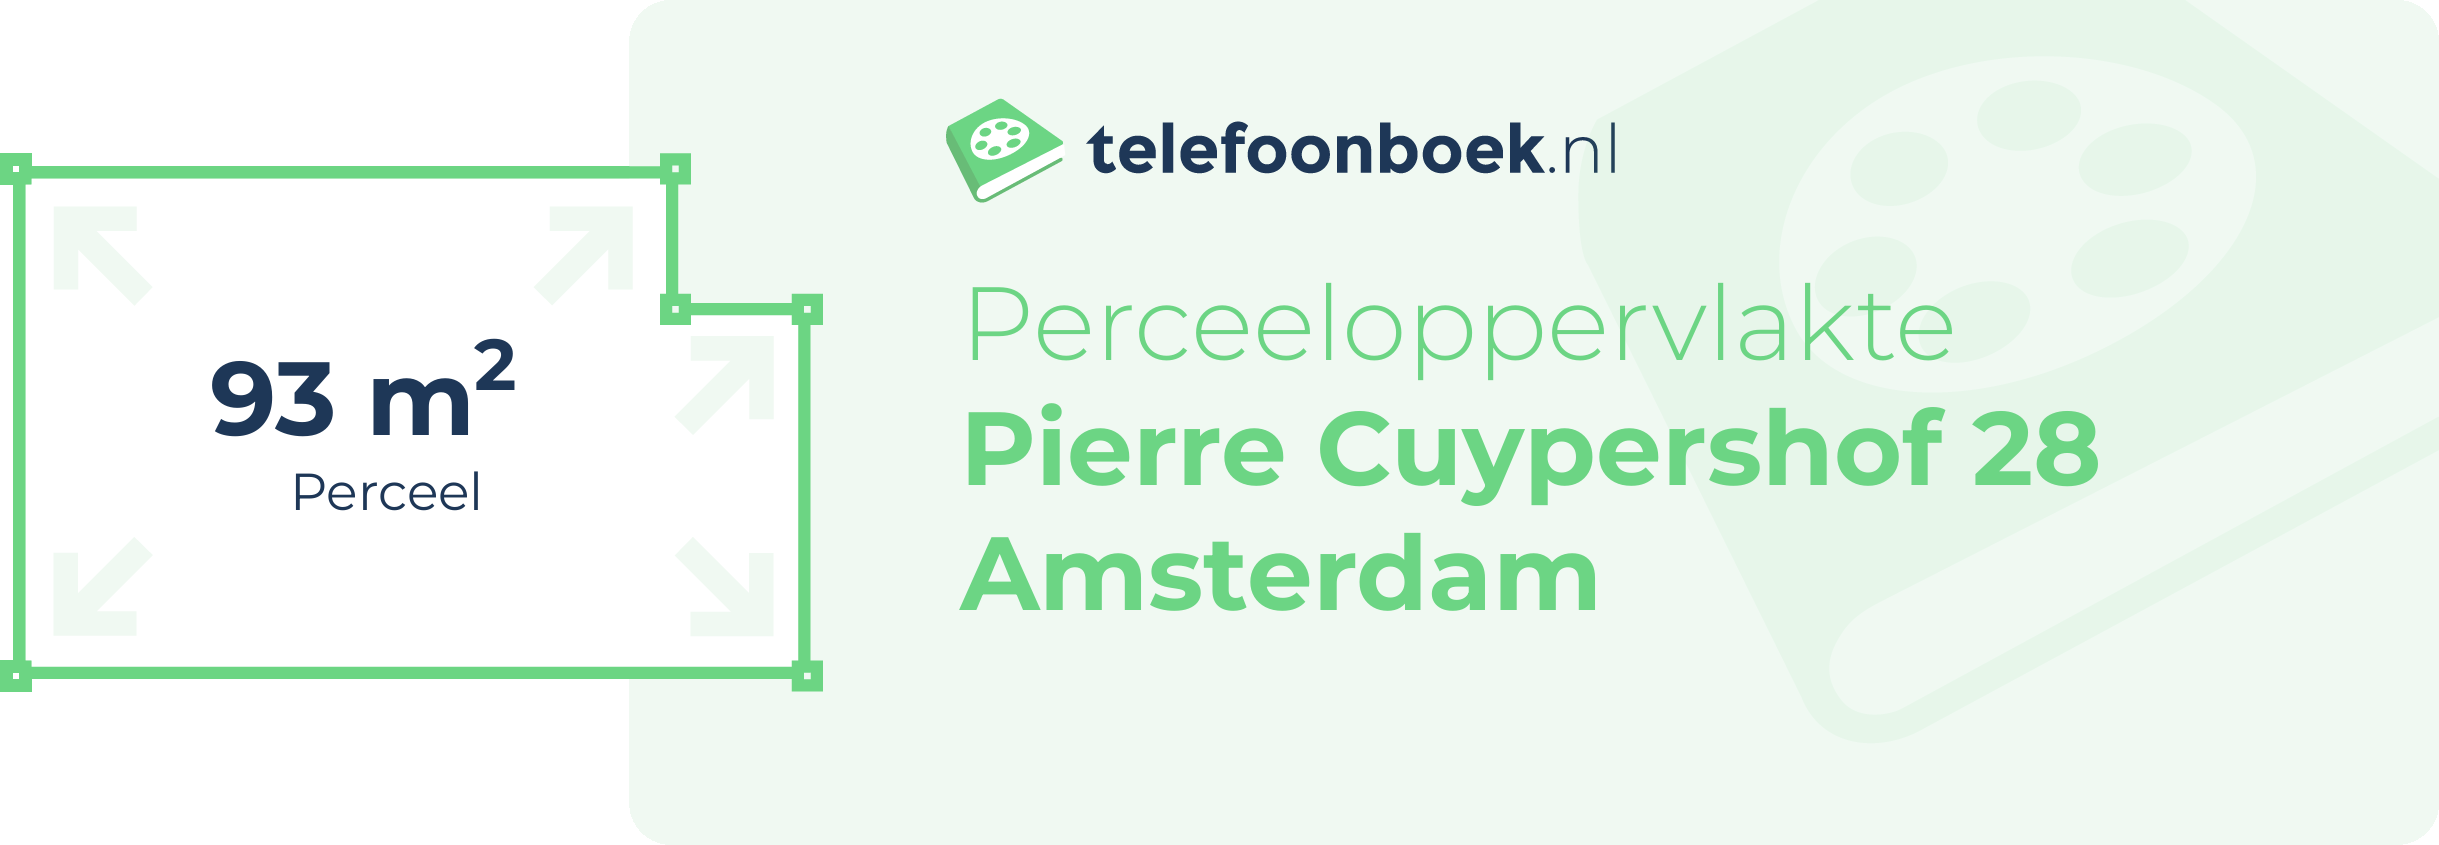 Perceeloppervlakte Pierre Cuypershof 28 Amsterdam